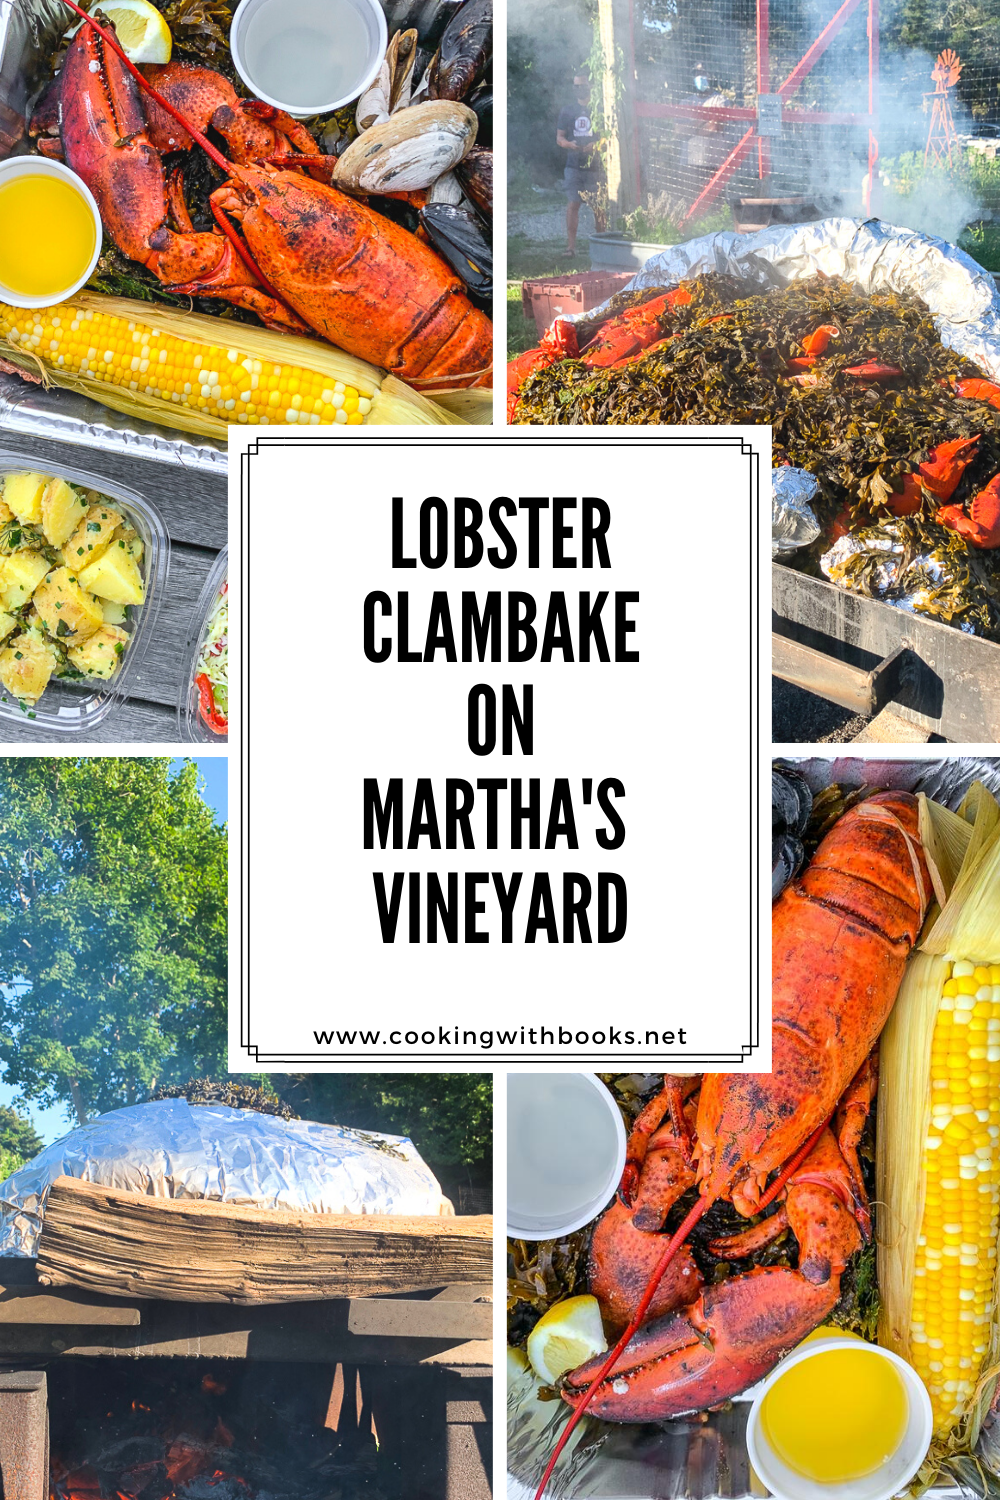 Martha’s Vineyard Lobster Clambake Dinner